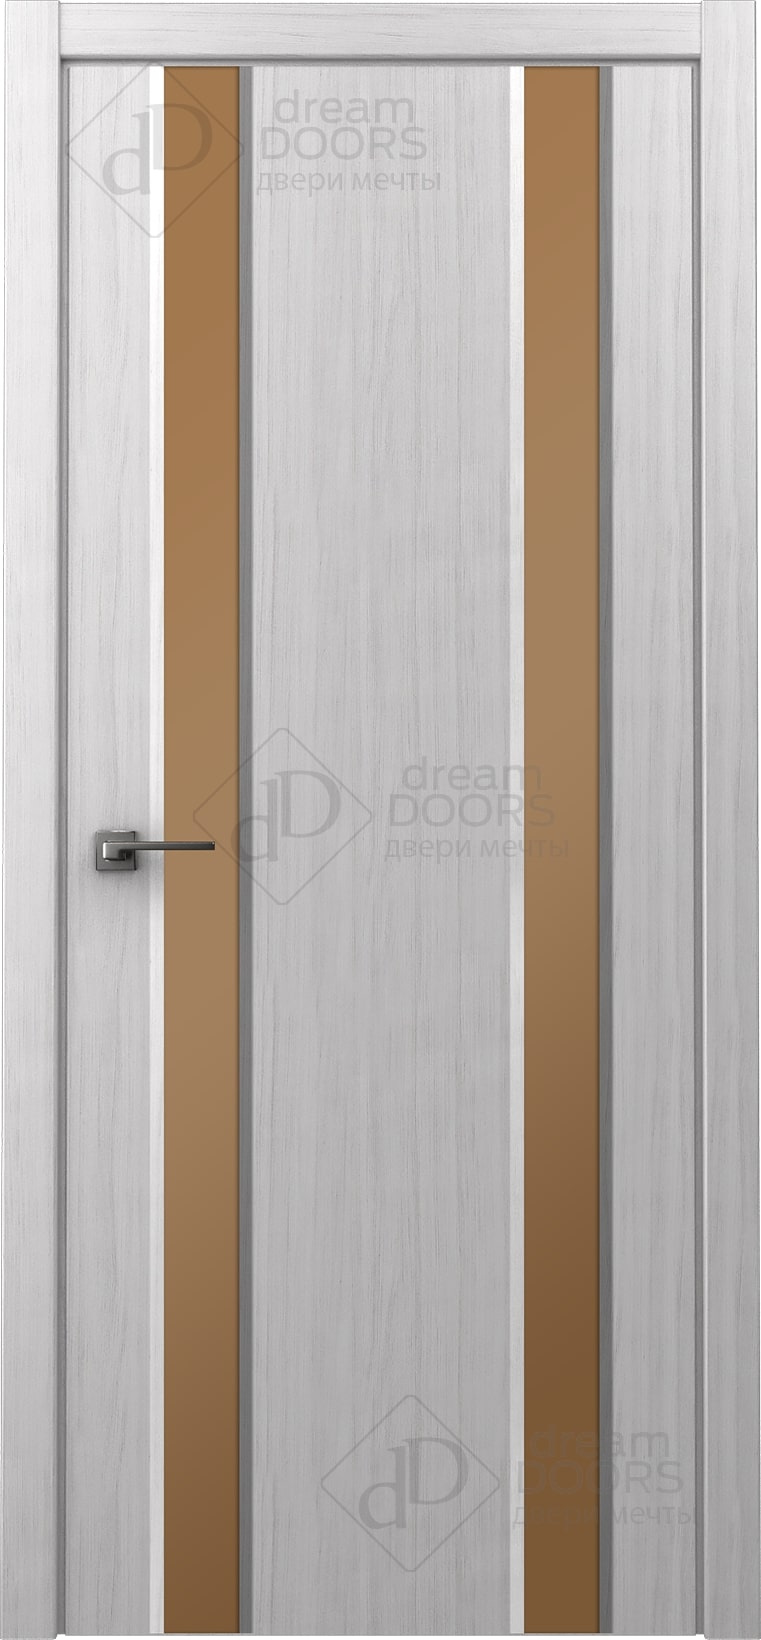 Dream Doors Межкомнатная дверь Стиль 2 узкое ПО, арт. 20071 - фото №9